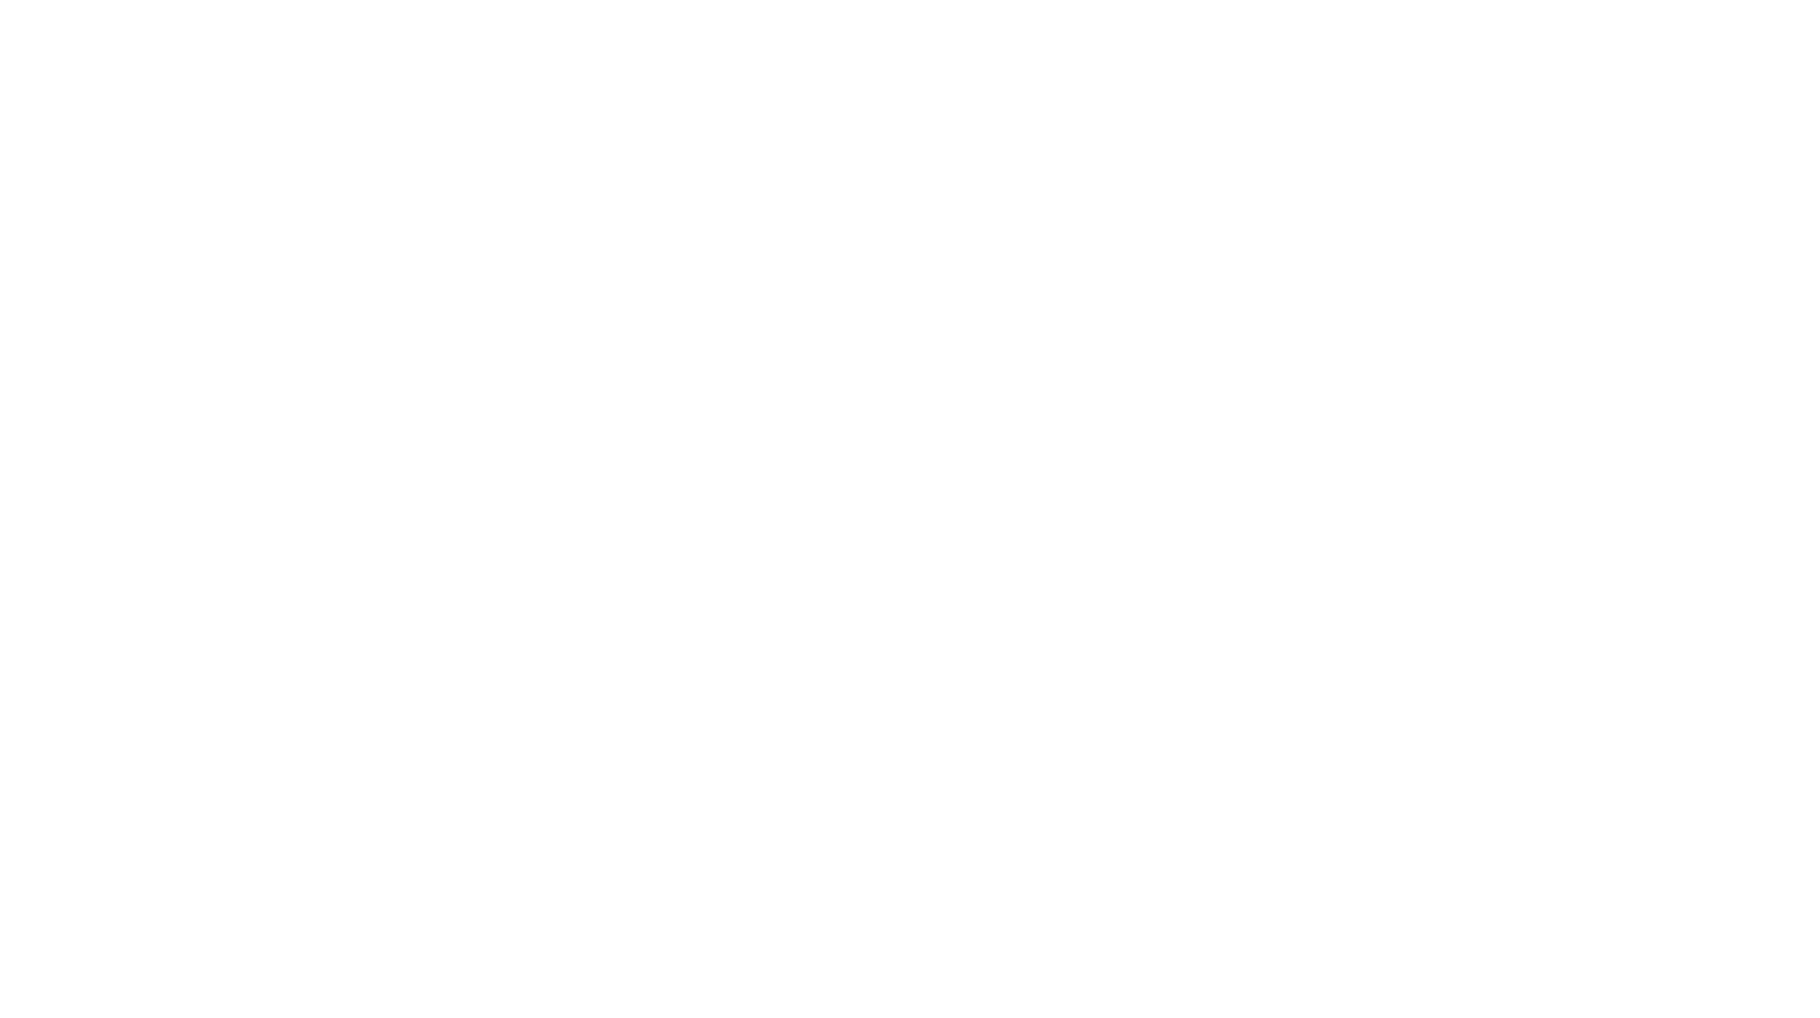 Uzbekistan Map